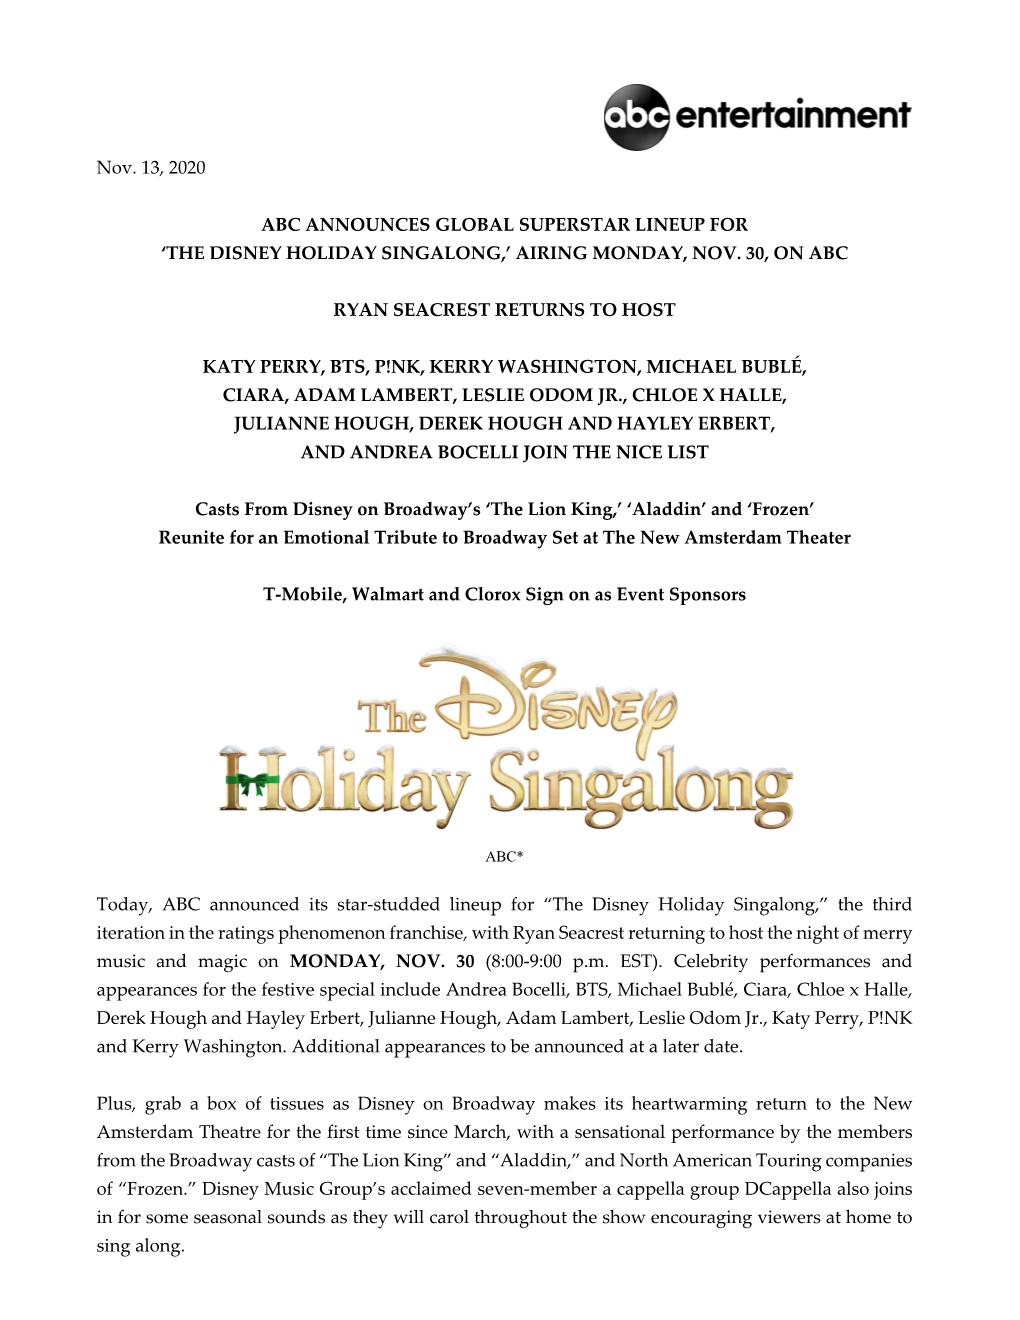 The Disney Holiday Singalong,’ Airing Monday, Nov